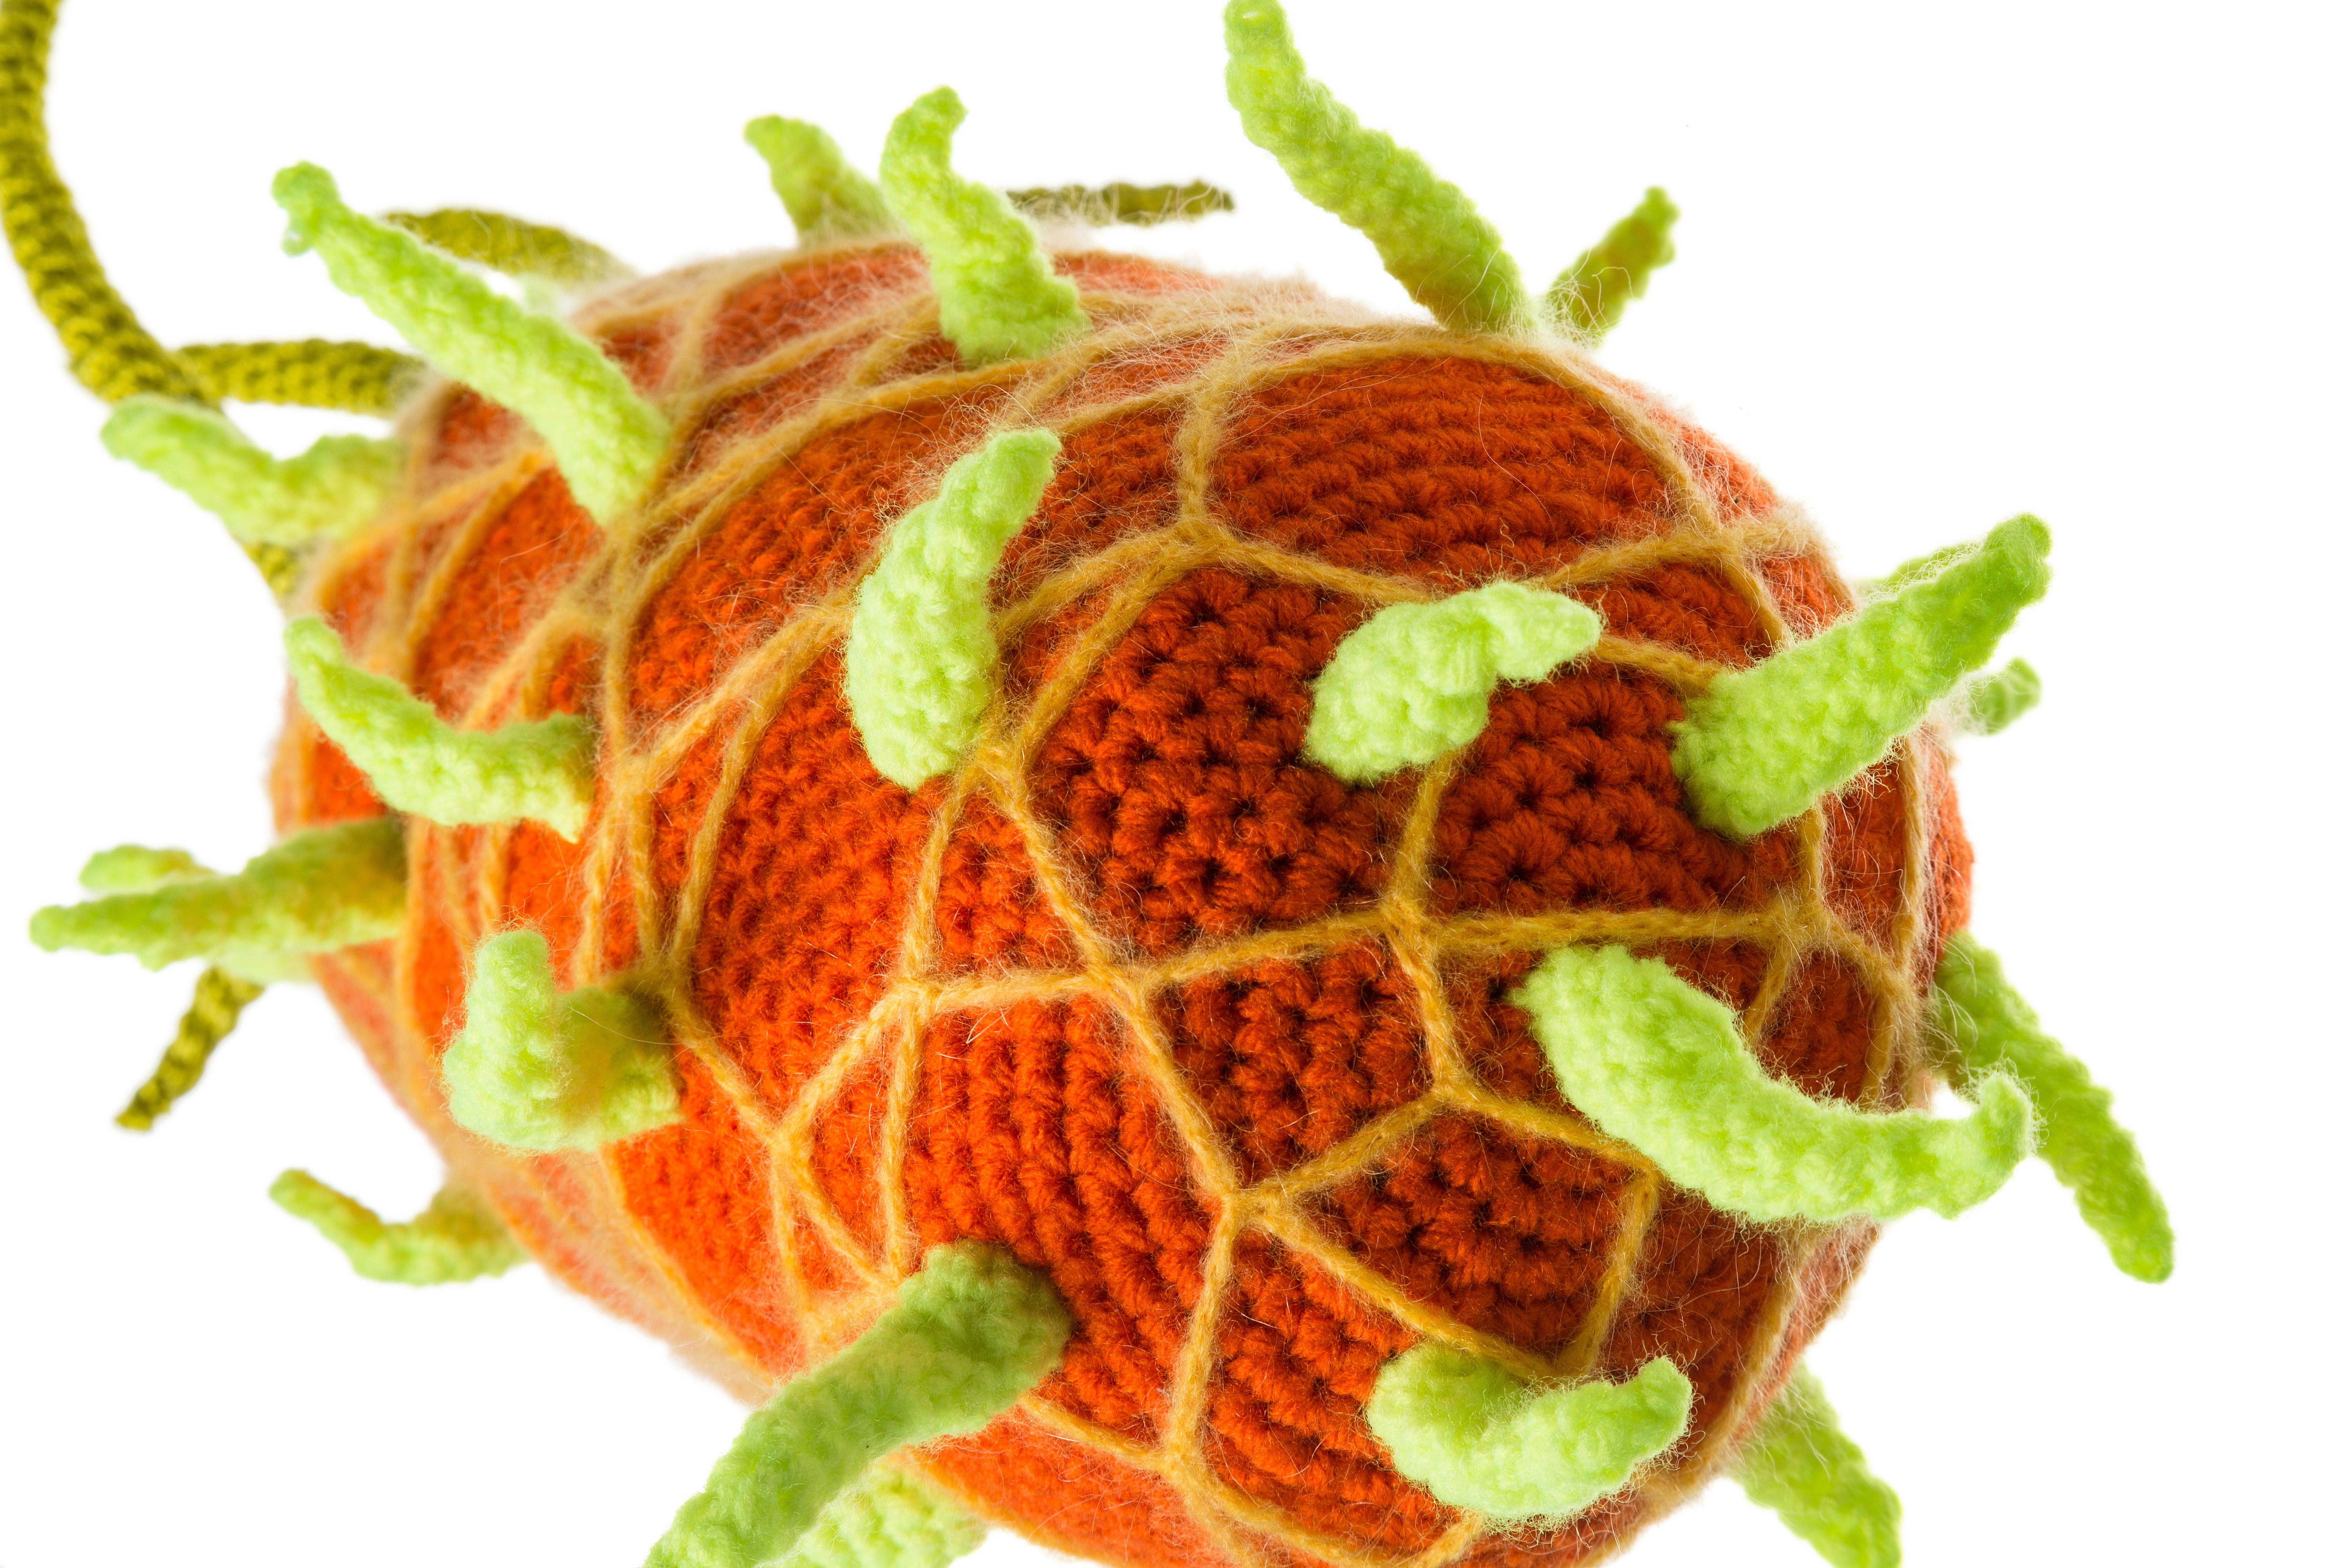 Das Foto zeigt ein gehäkeltes Pestvirus in den Farben orange-gelb-grün